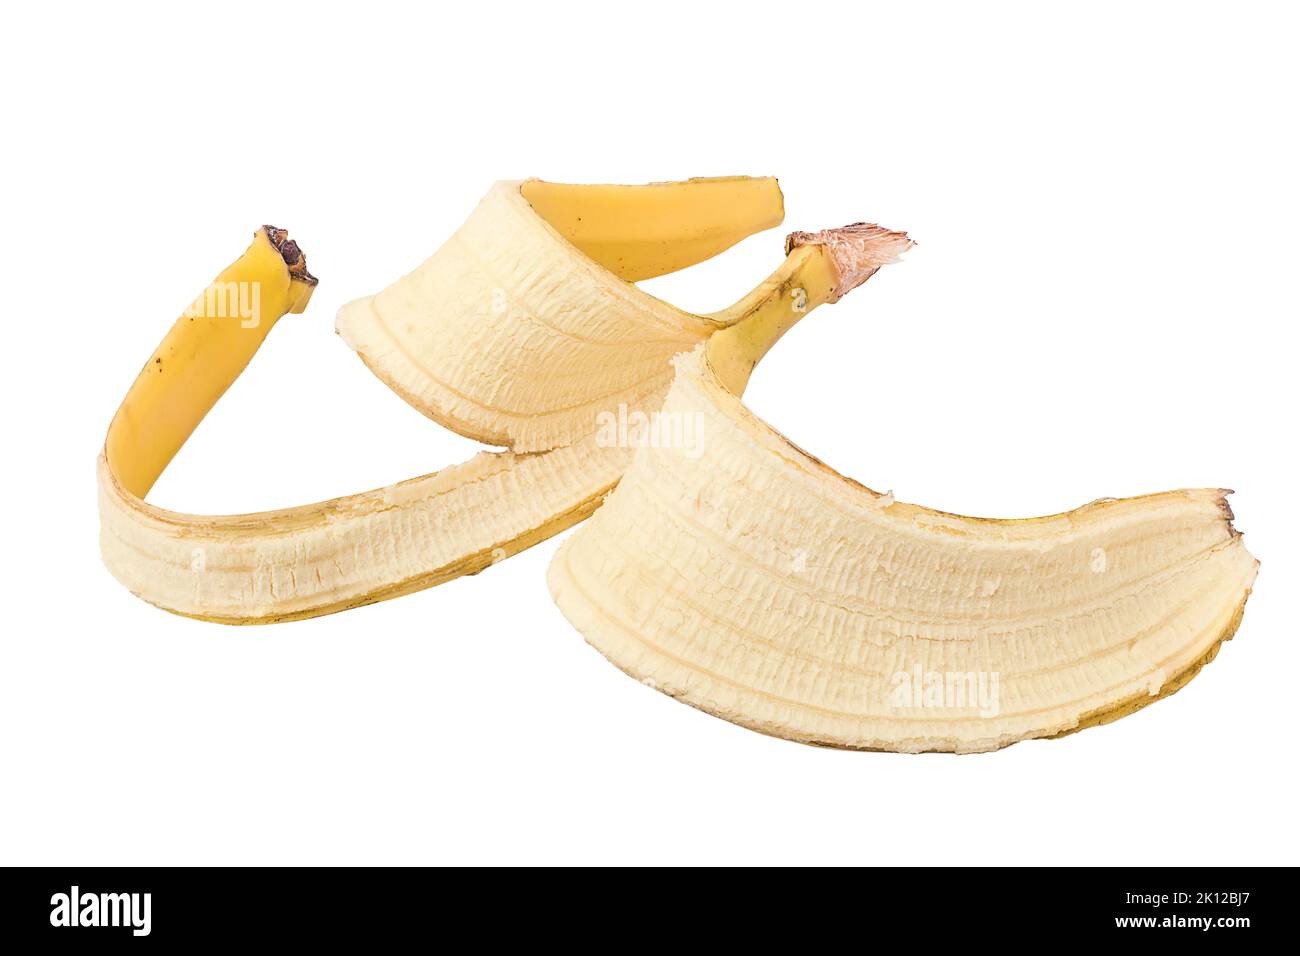 imagen detallada de piel amarilla de plátano aislada sobre blanco Foto de stock